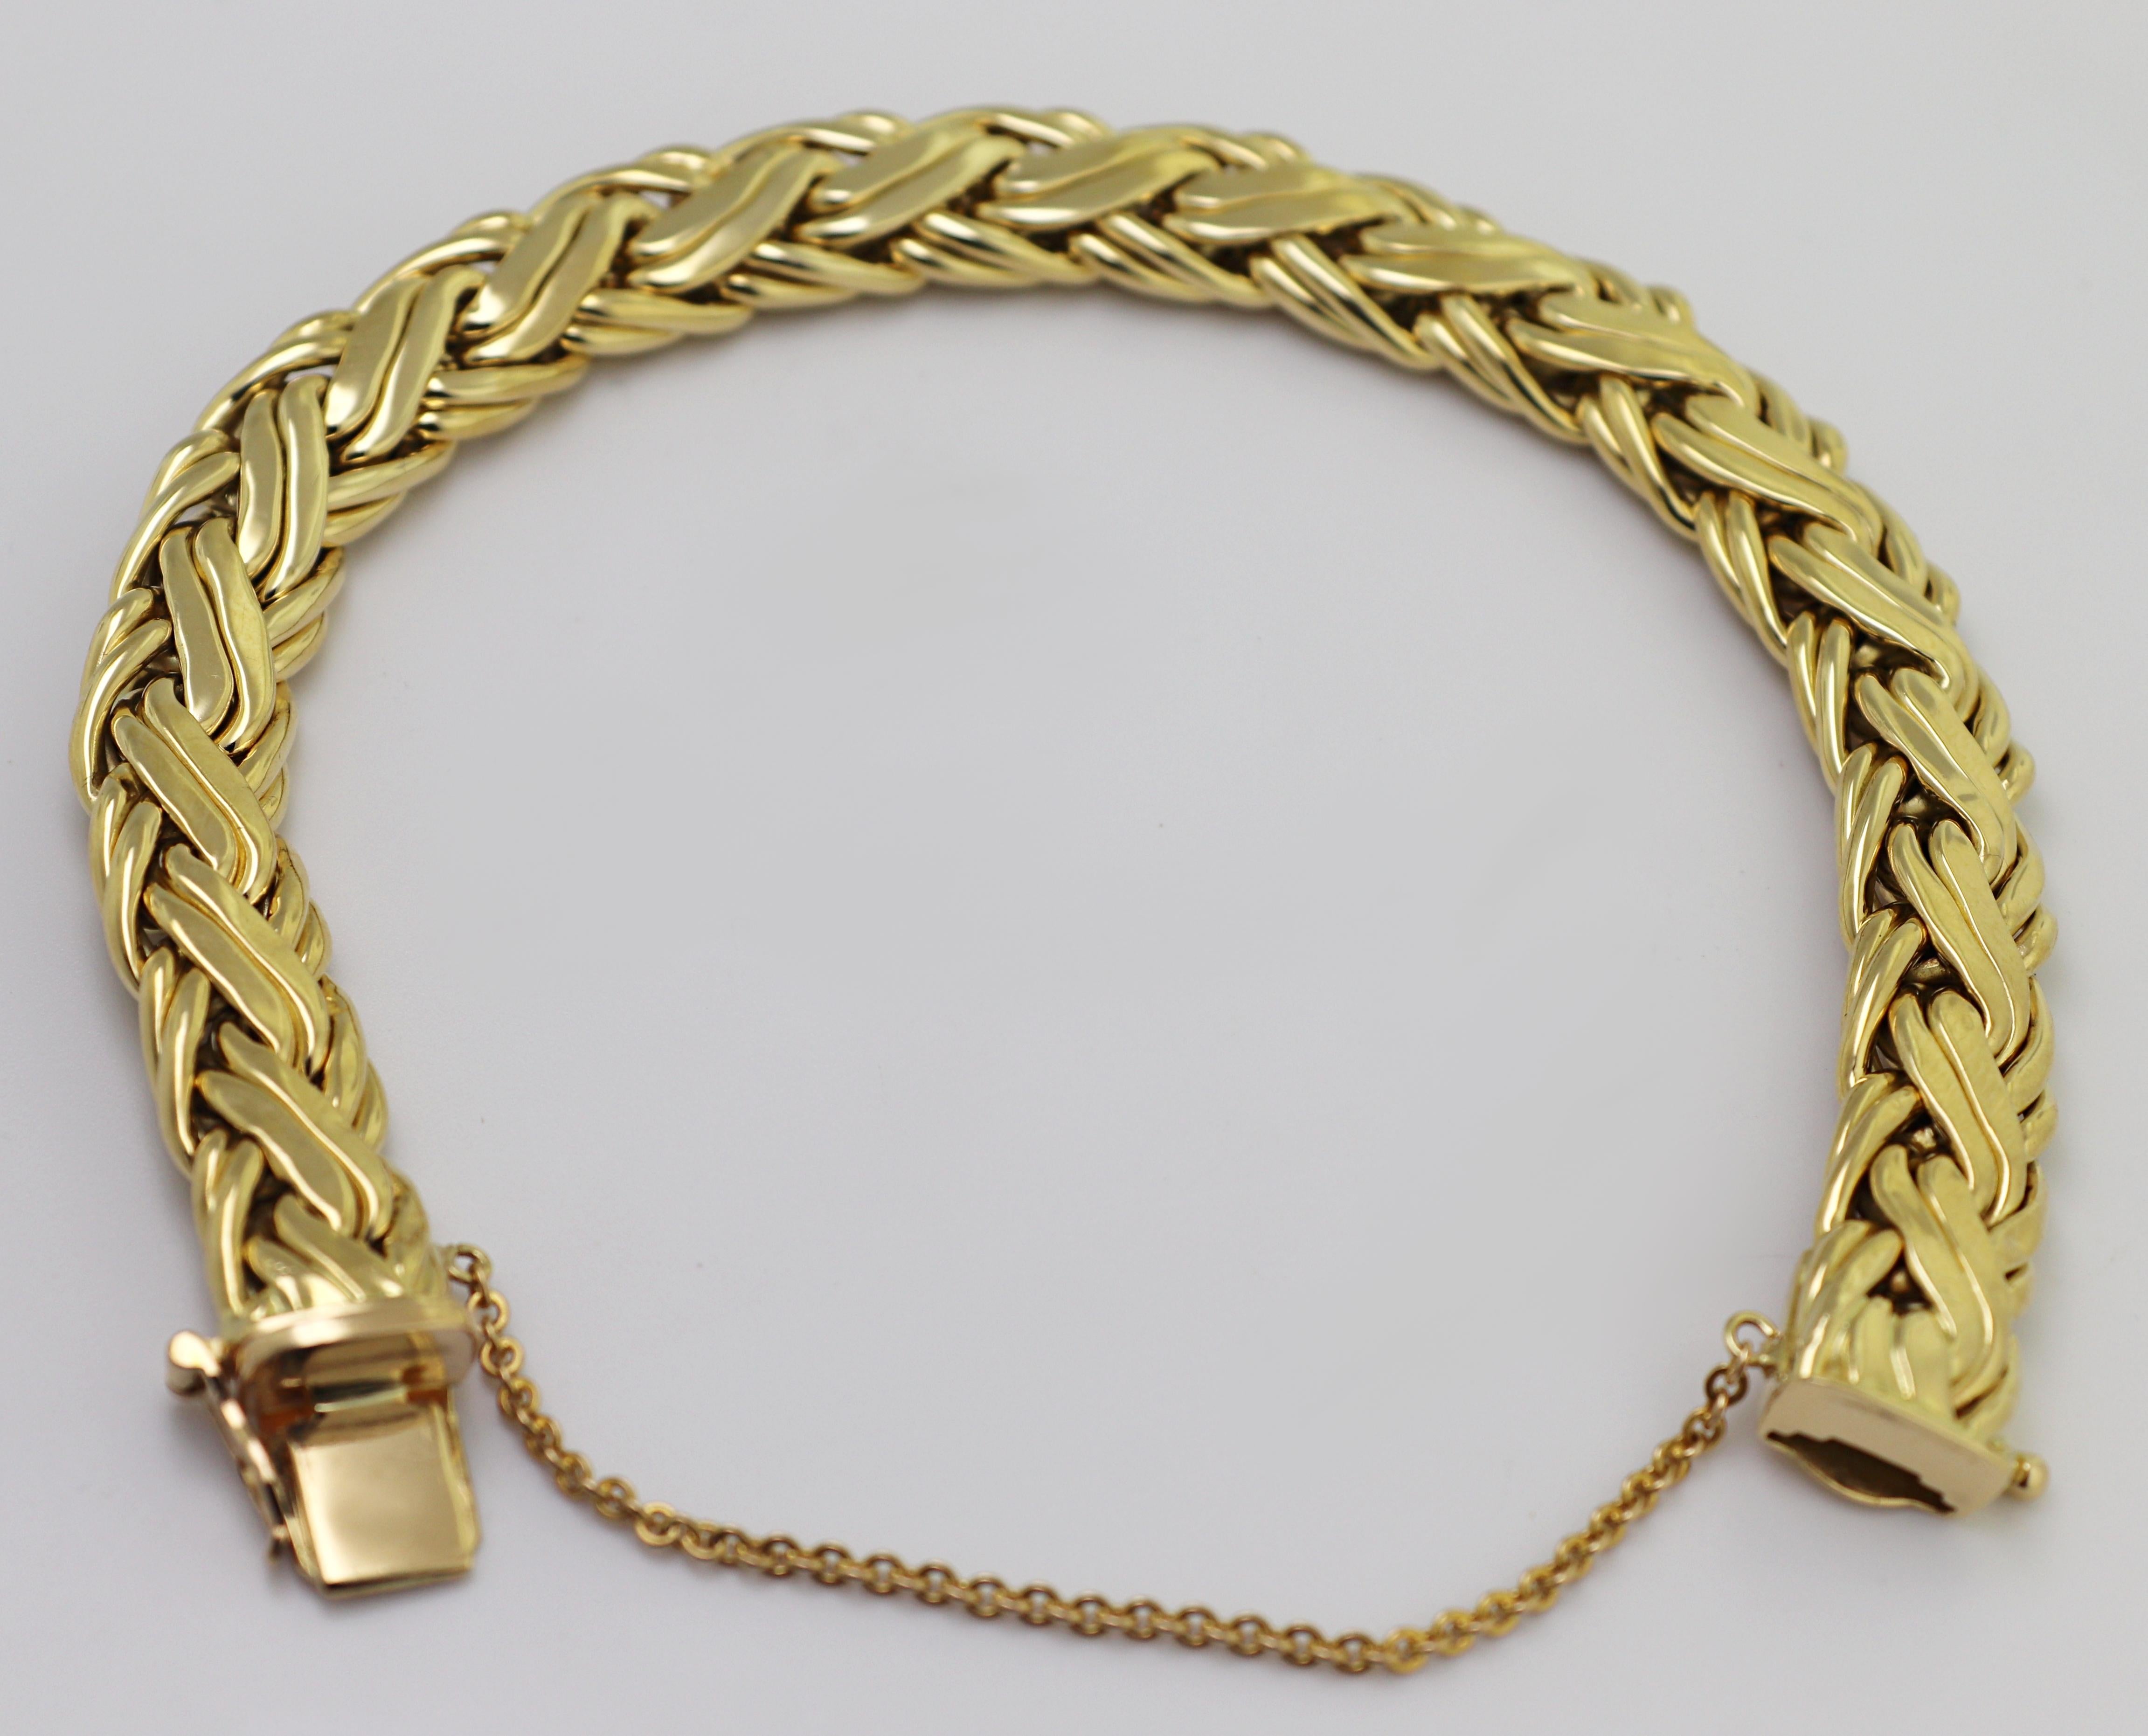 Le lien tissé en or jaune 18 carats, 9,7 X 4,6 mm, est complété par un fermoir-boîte,
avec un huit et une chaîne de sécurité, formant un bracelet de 7,5 pouces, marqué
TIFFANY &Co, 750, Poids 33,57 grammes.